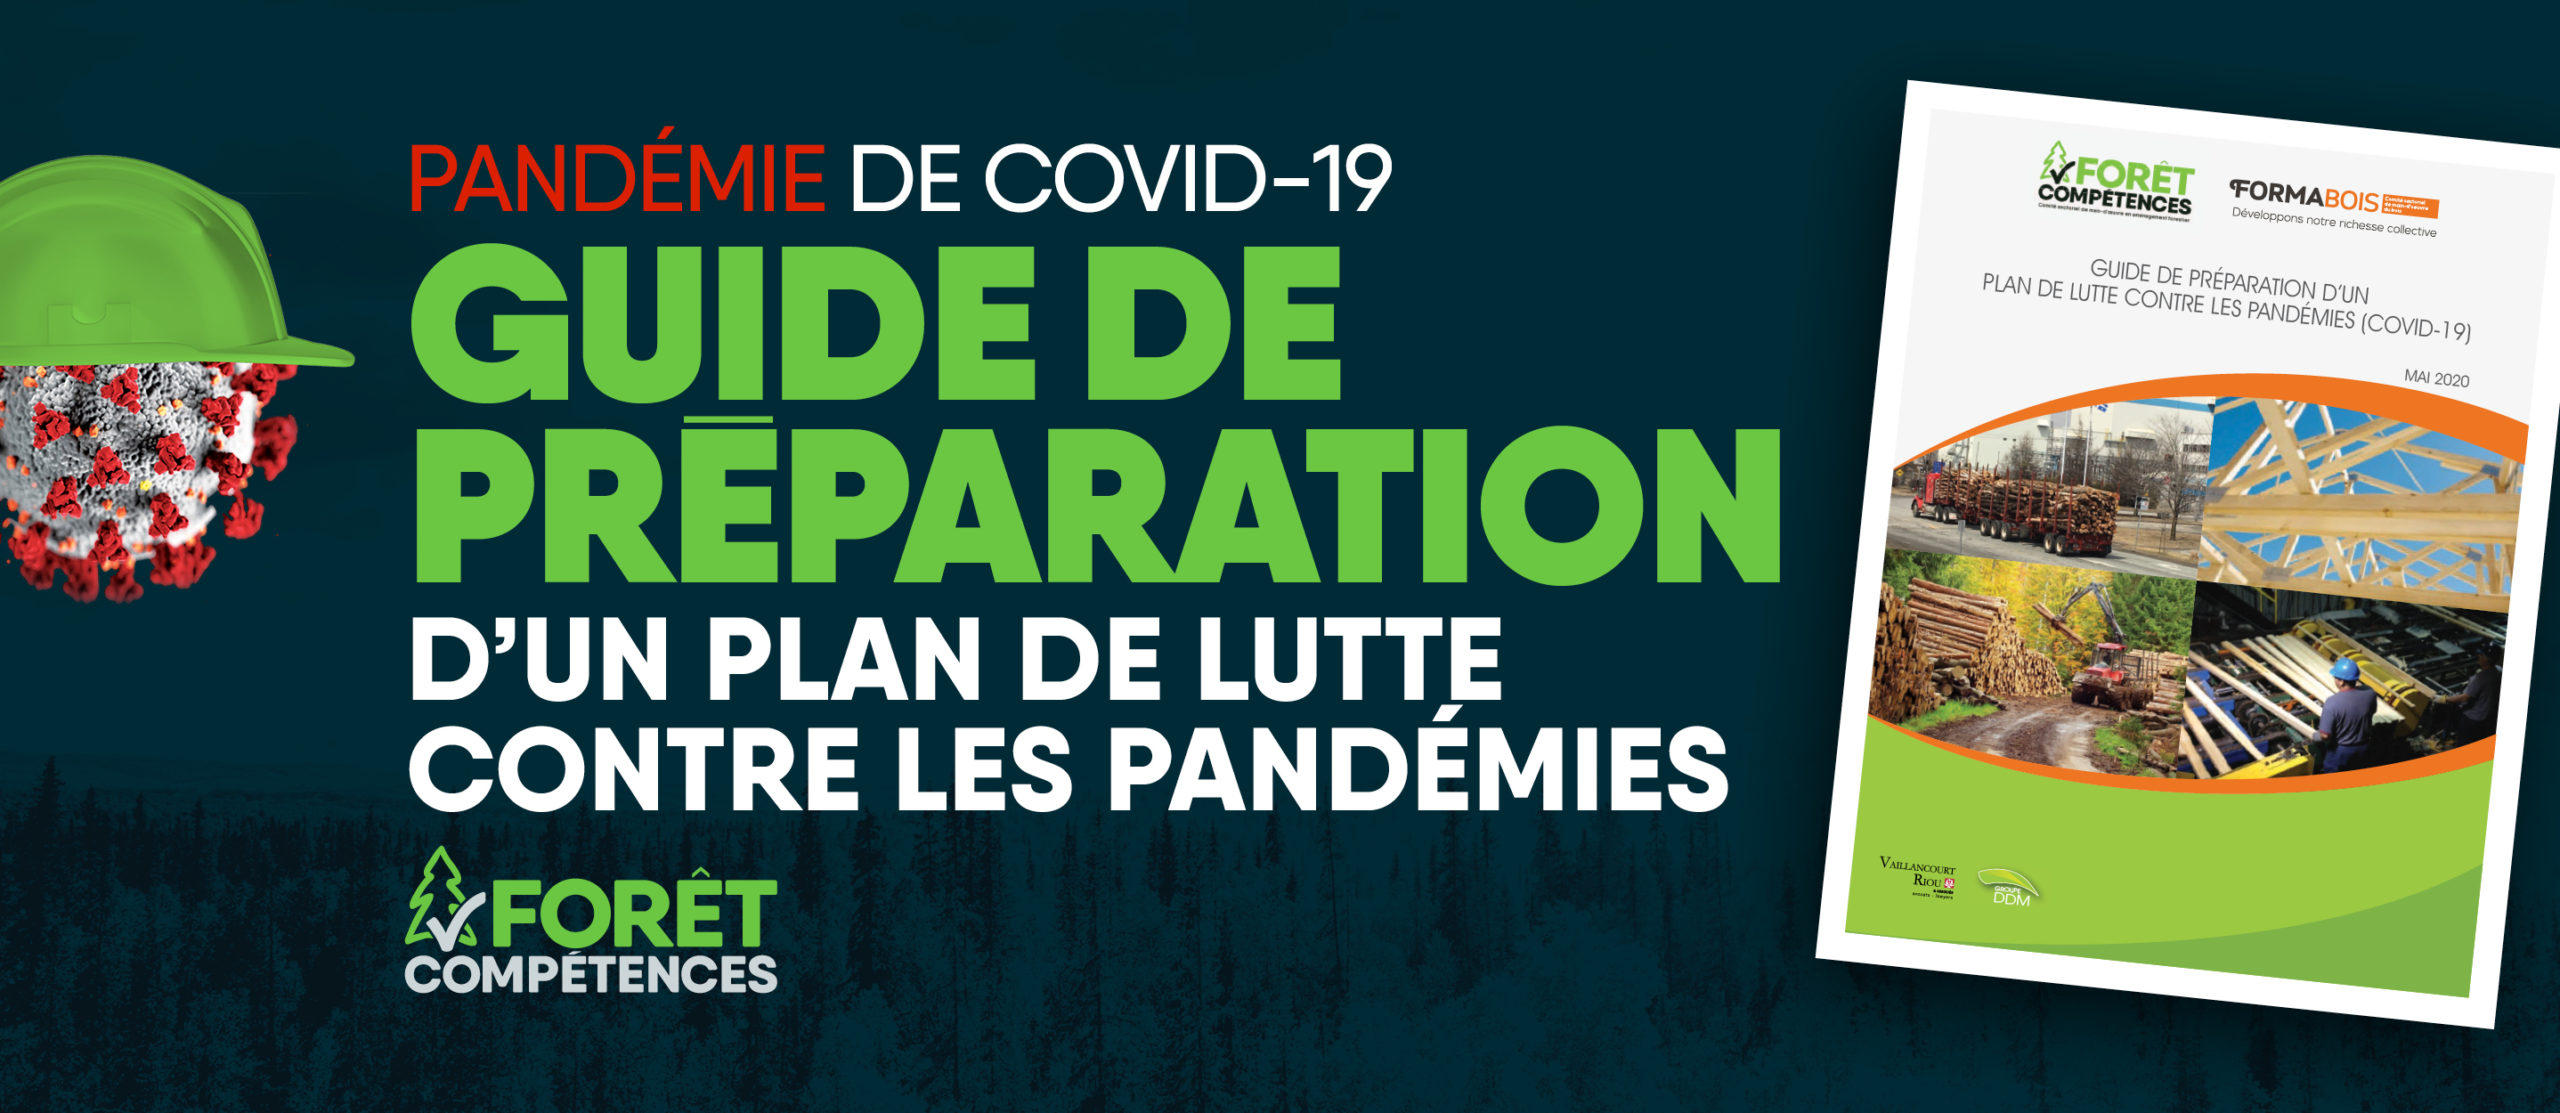 Guide de préparation d’un plan de lutte contre les pandémies, Septembre 2020